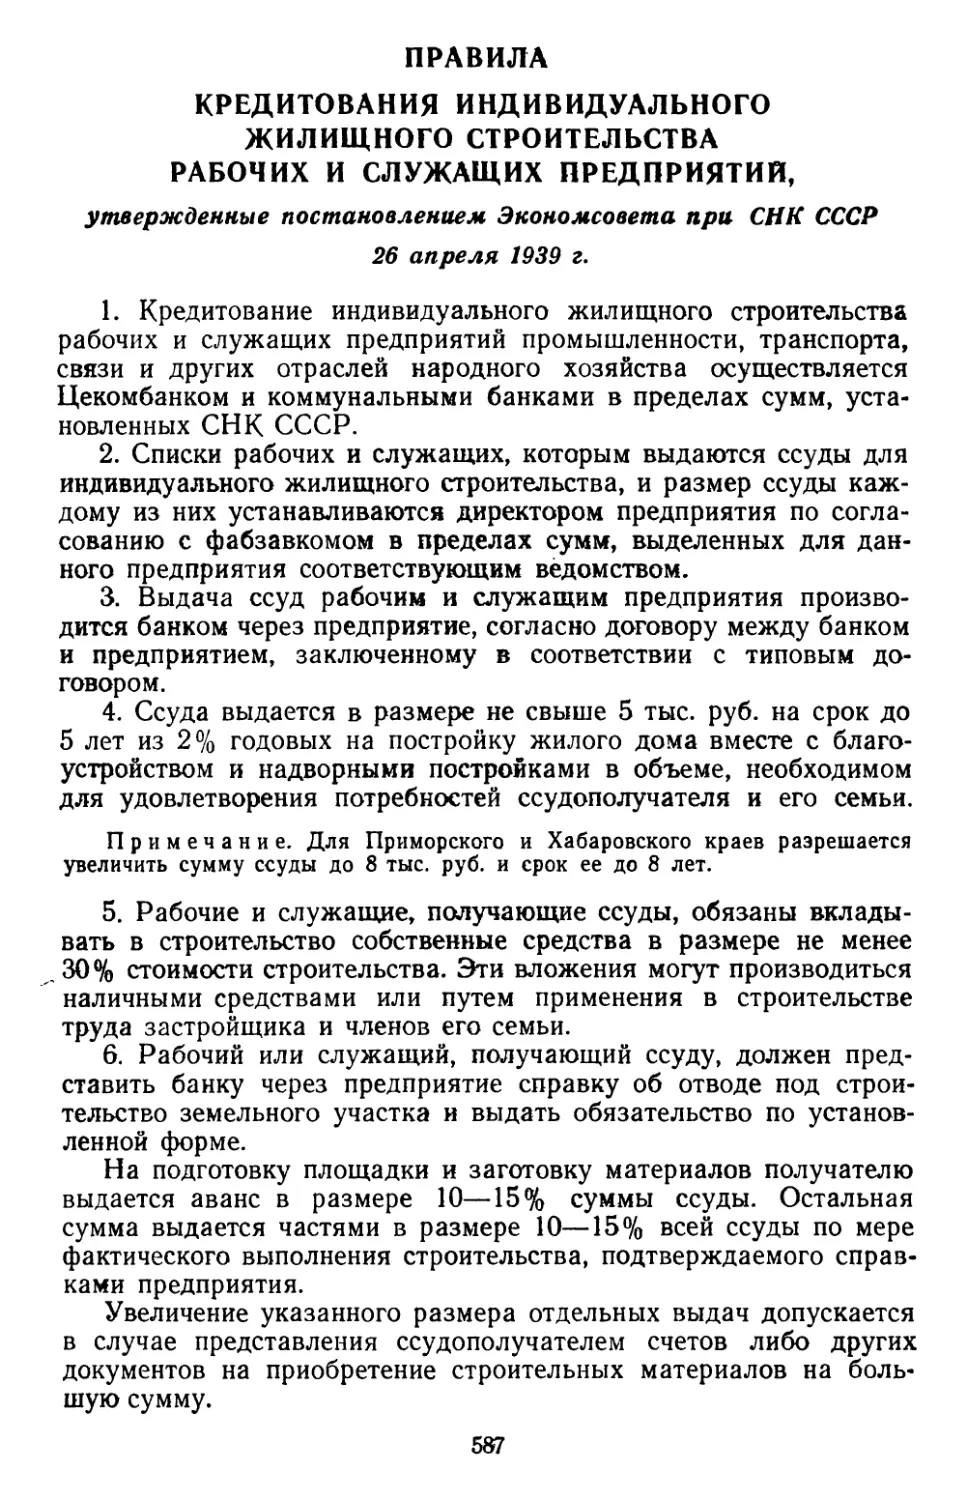 Правила кредитования индивидуального жилищного строительства рабочих и служащих предприятий, утвержденные постановлением Экономсовета при СНК СССР 26 апреля 1939 г